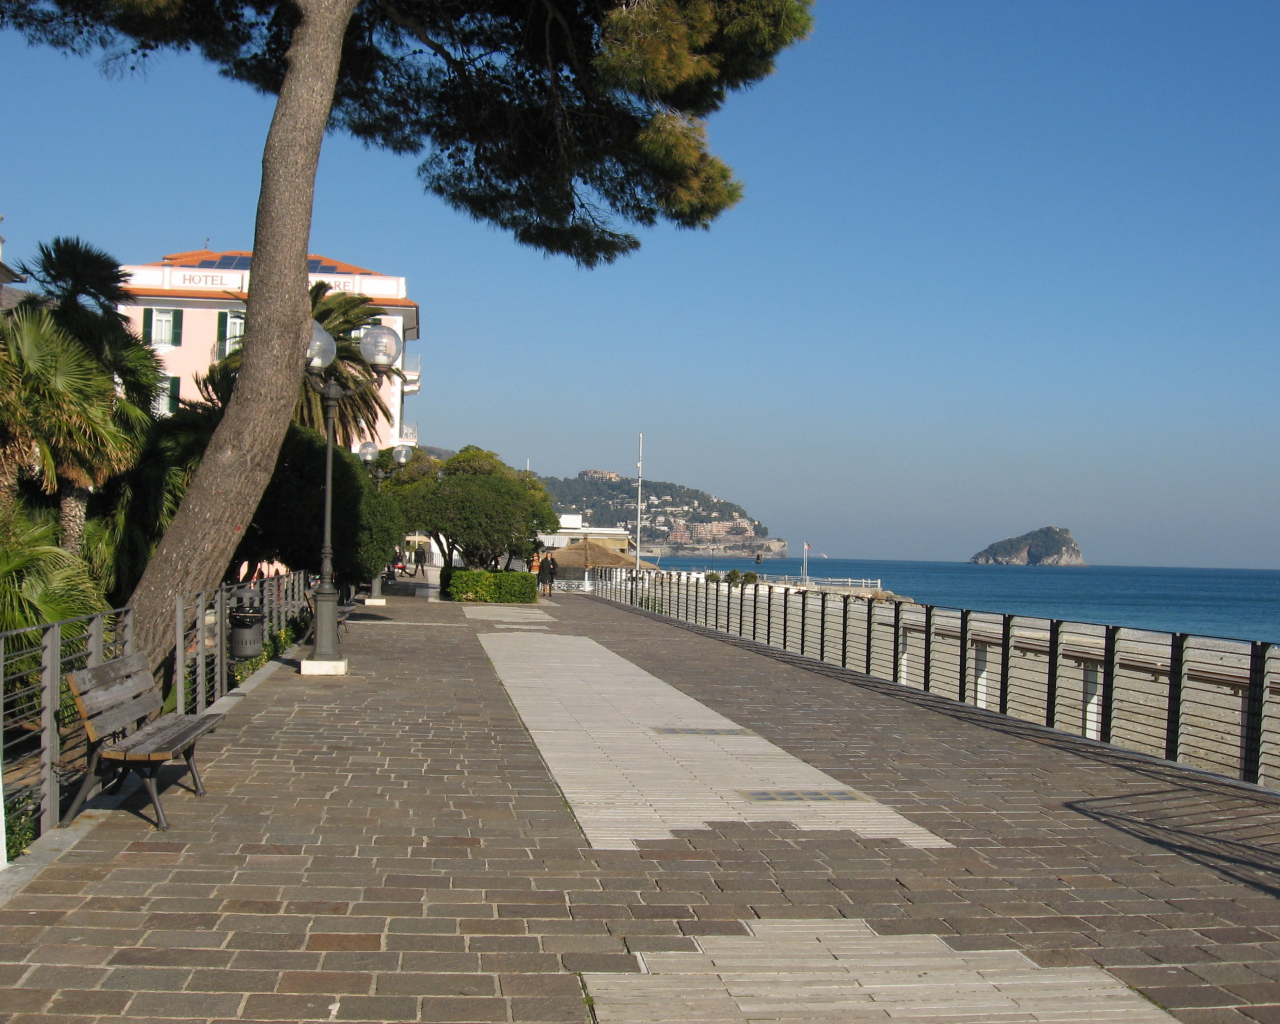 Promenade in resort Spotorno, Italy